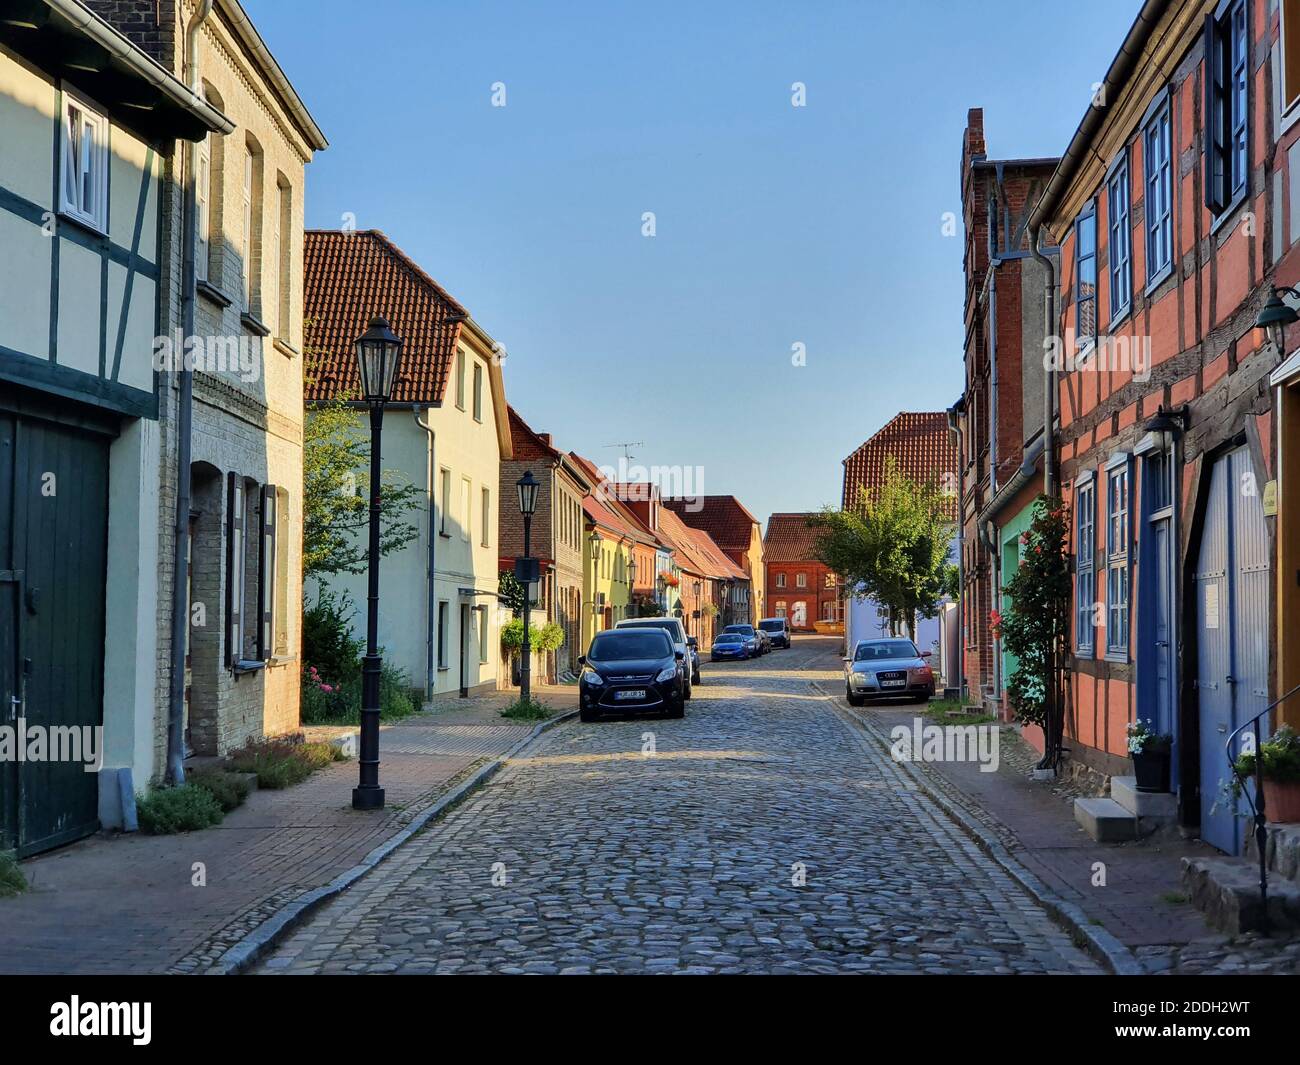 Historic street in Robel, Germany Stock Photo